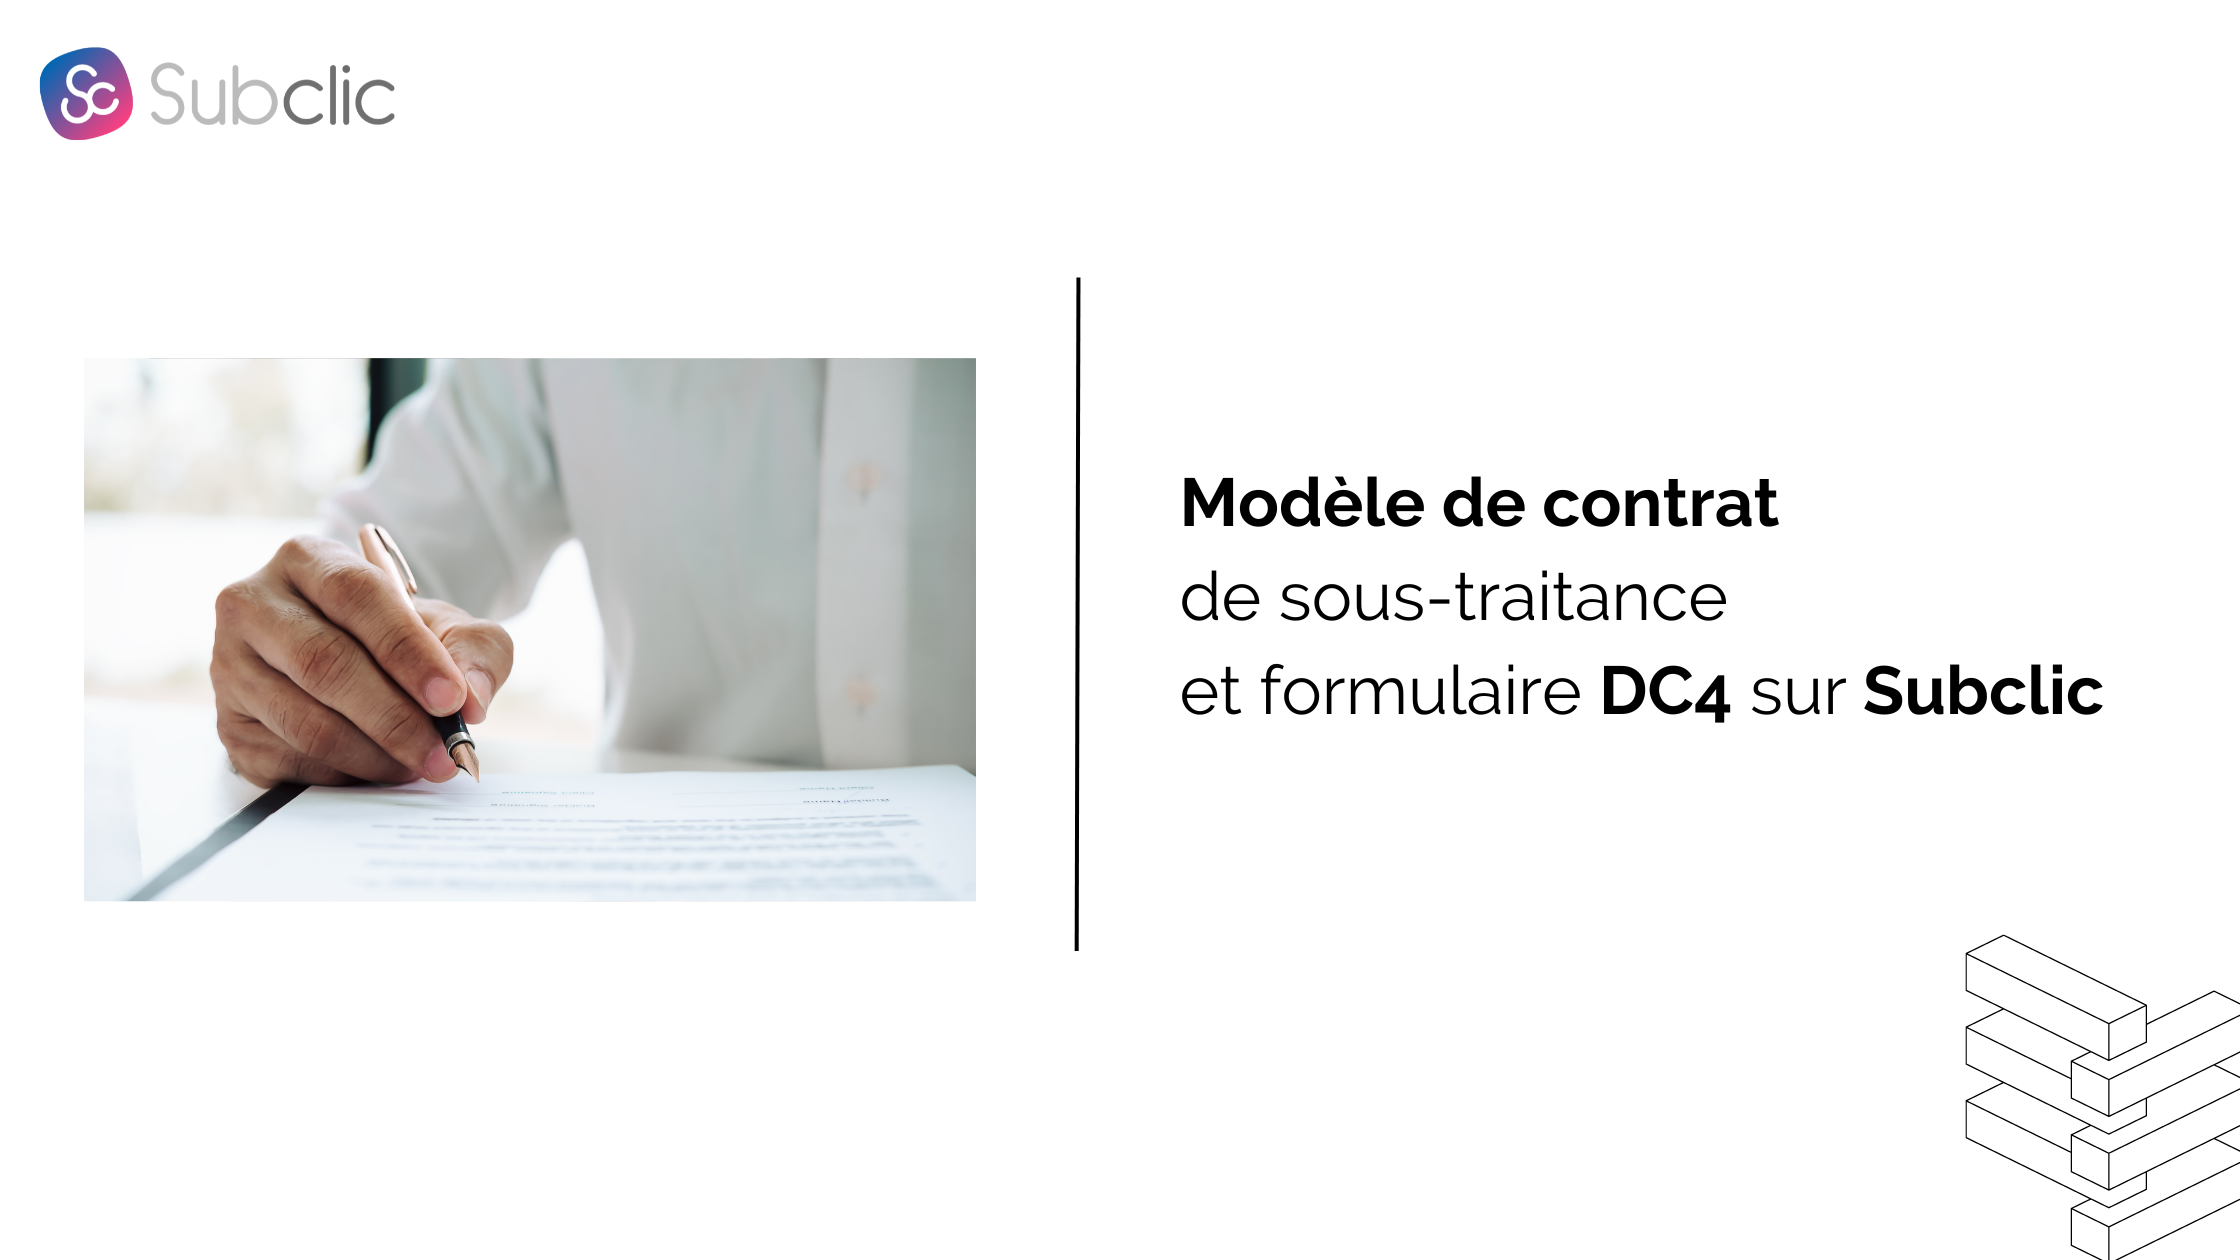 You are currently viewing Modèle de contrat de sous-traitance du BTP et formulaire DC4 des marchés publics sur Subclic